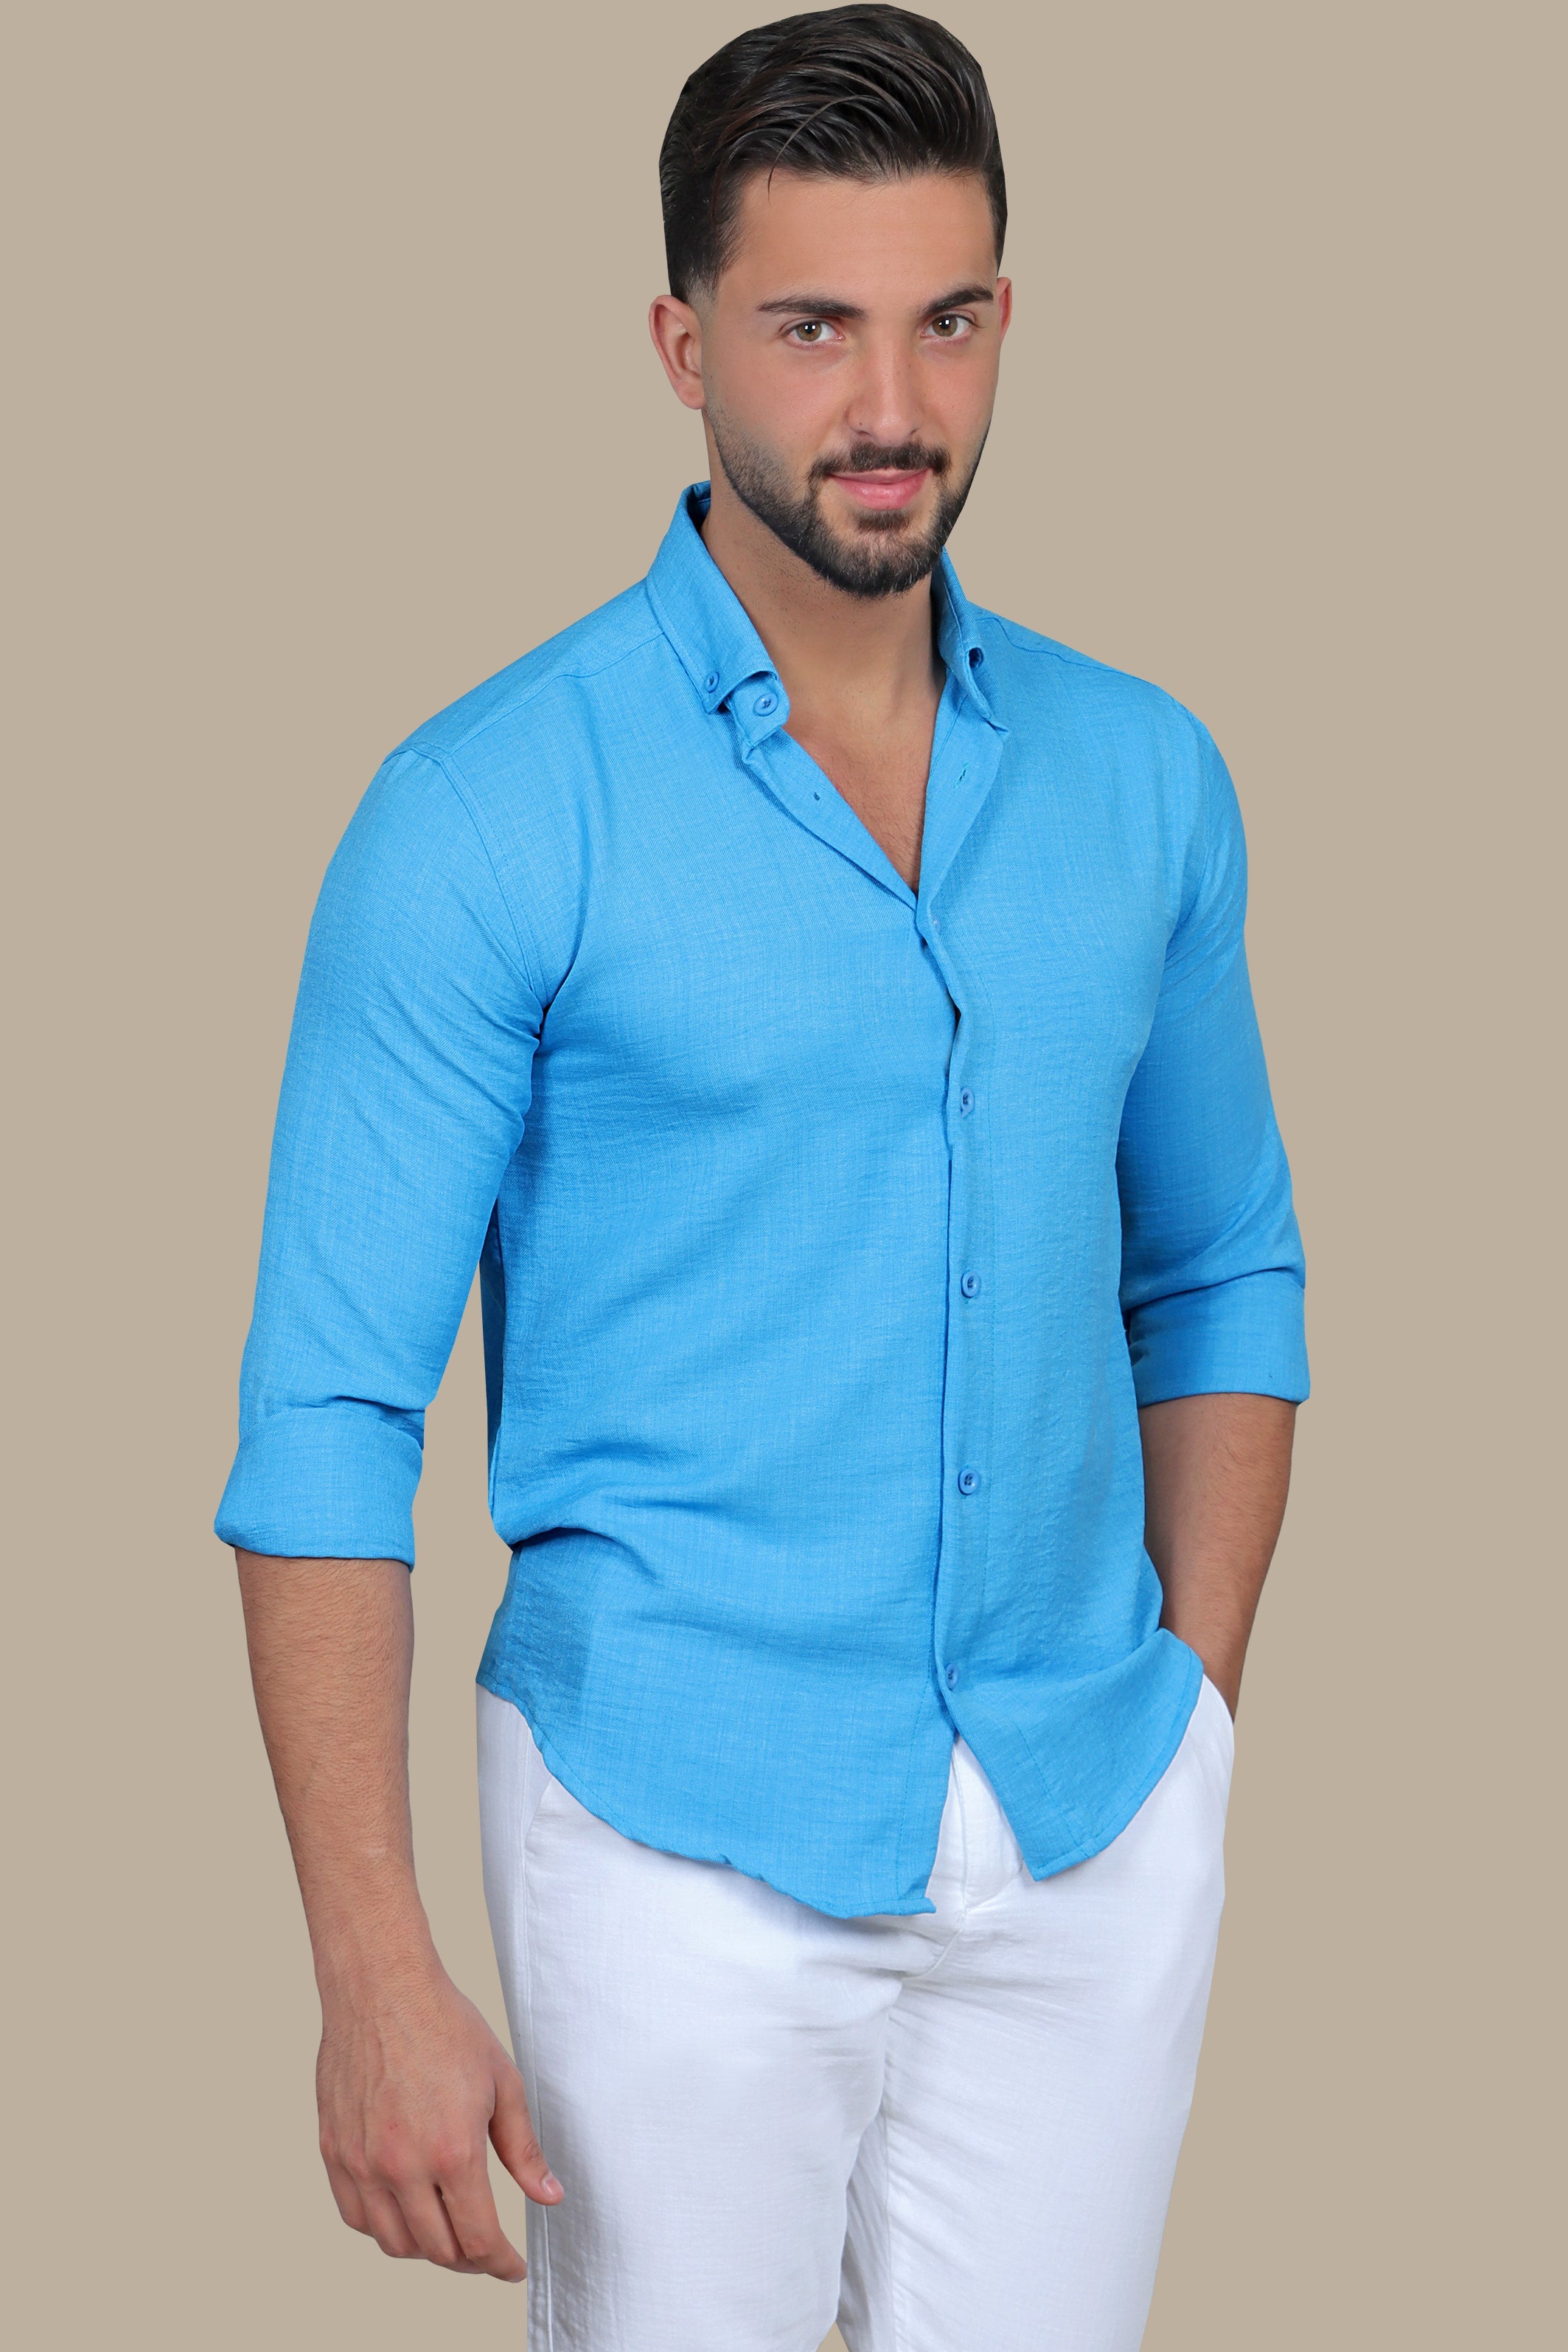 Classic Blue Linen Shirt: Long & Short Sleeve Options